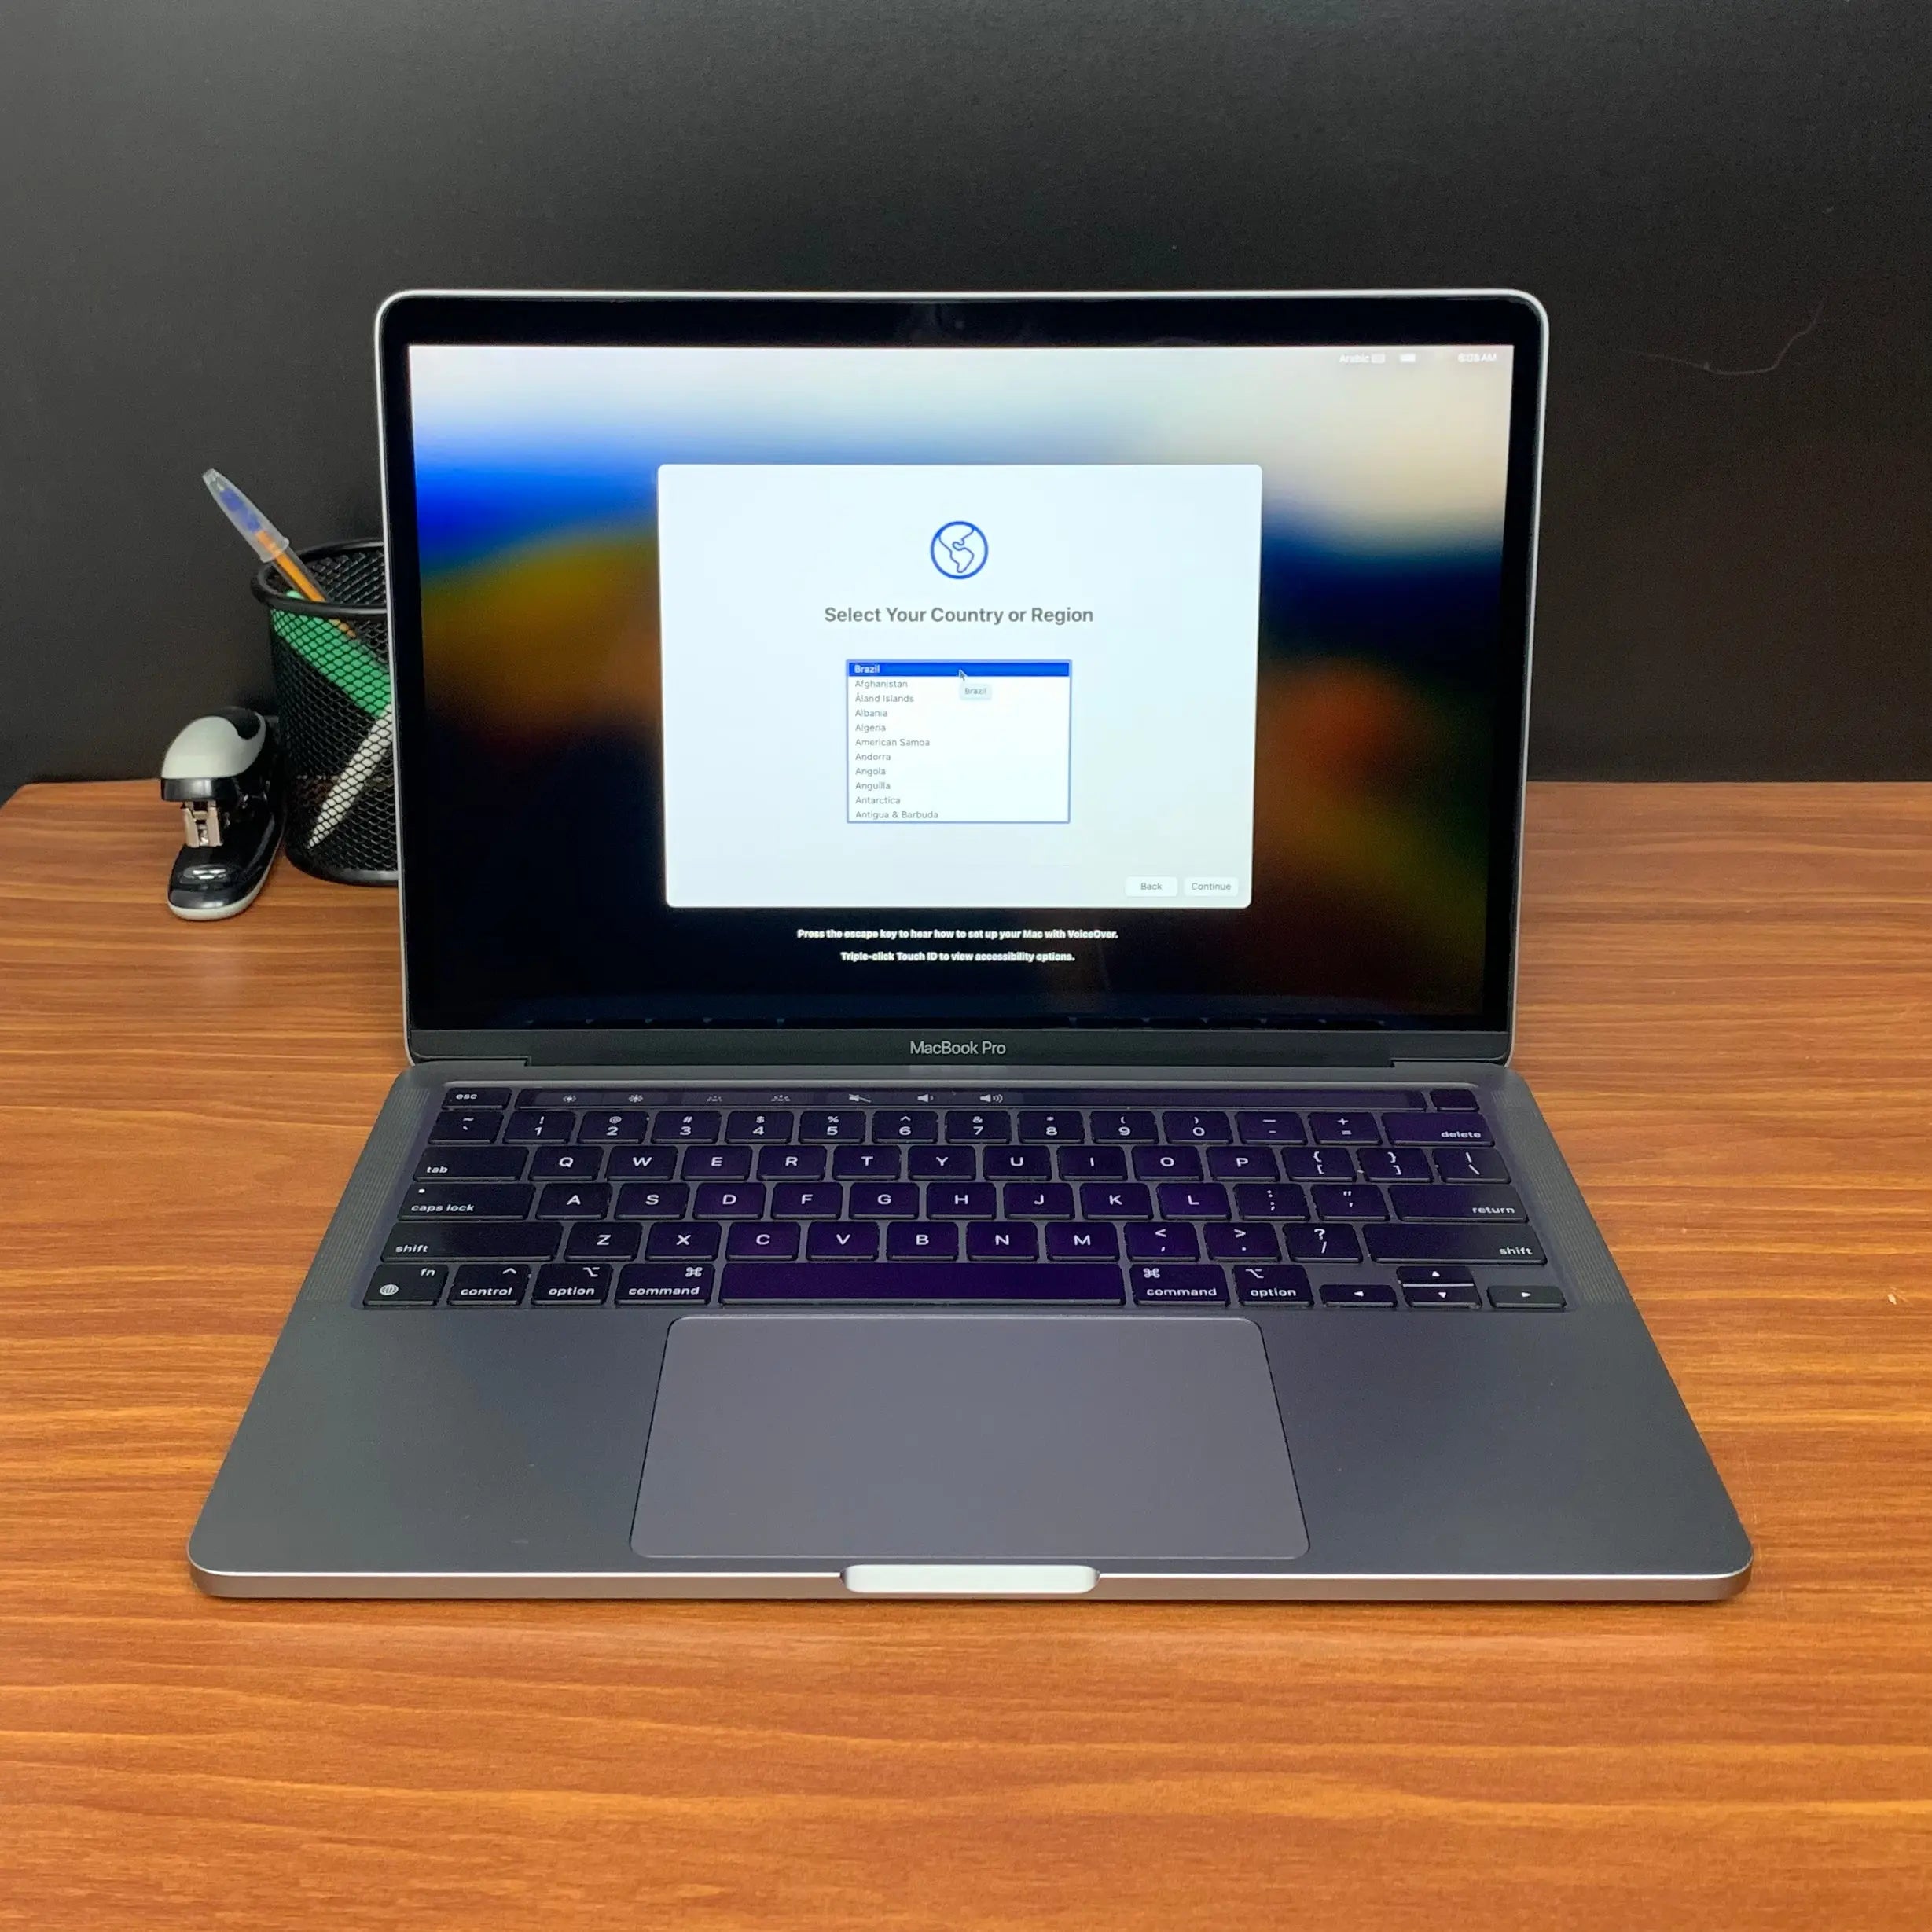 Comprar MacBook Pro usado - Macbook Pro 13 M1 2020 - TrocaTech Seminovos